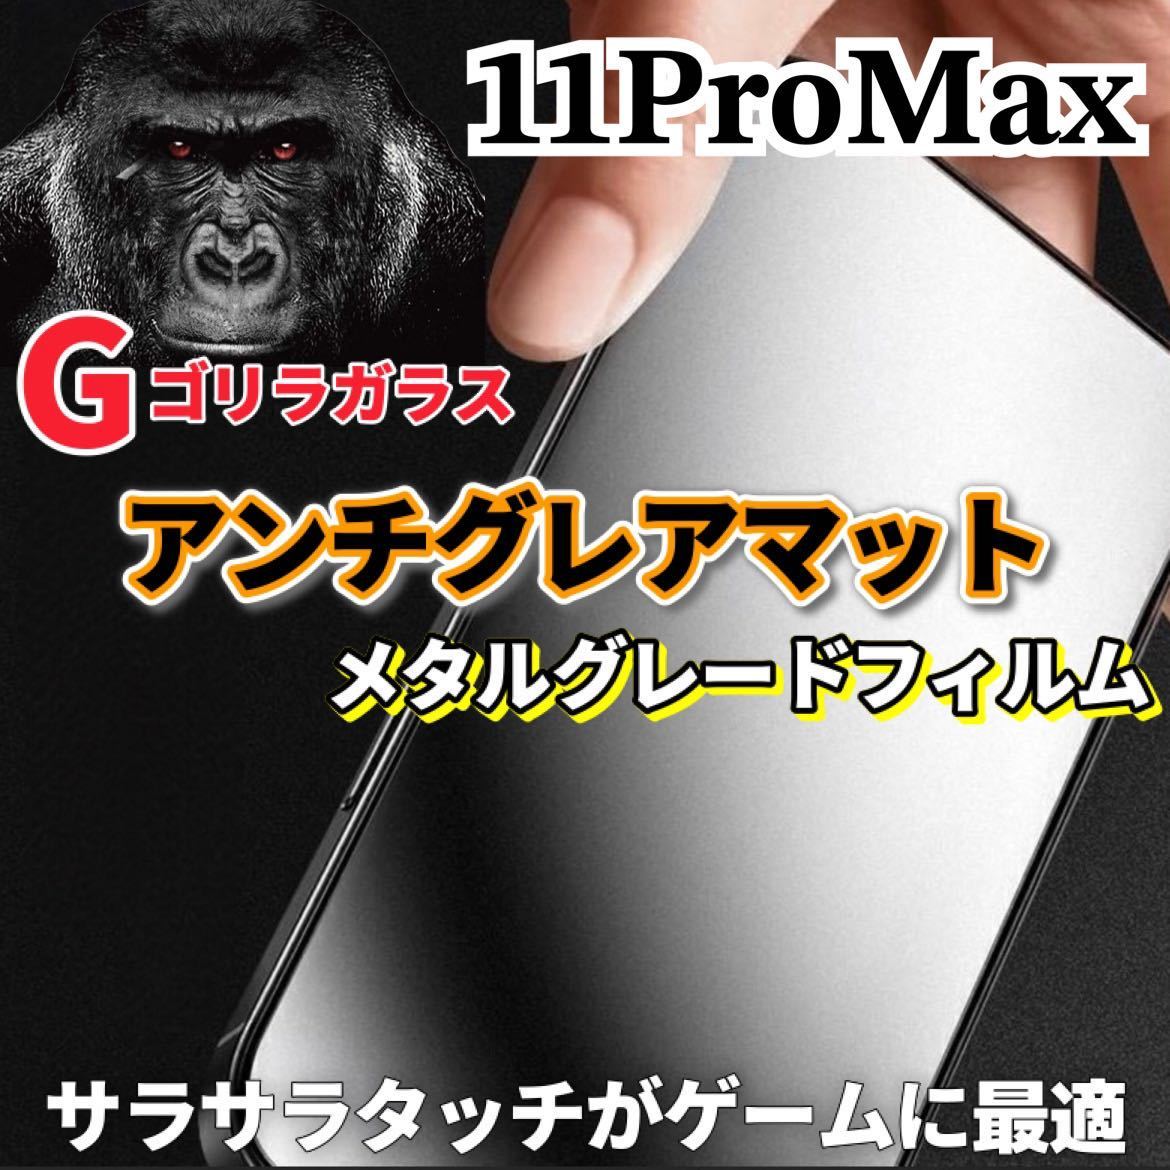 〈高性能〉【iPhone11ProMax】極上マット2.5Dアンチグレアガラスフィルム